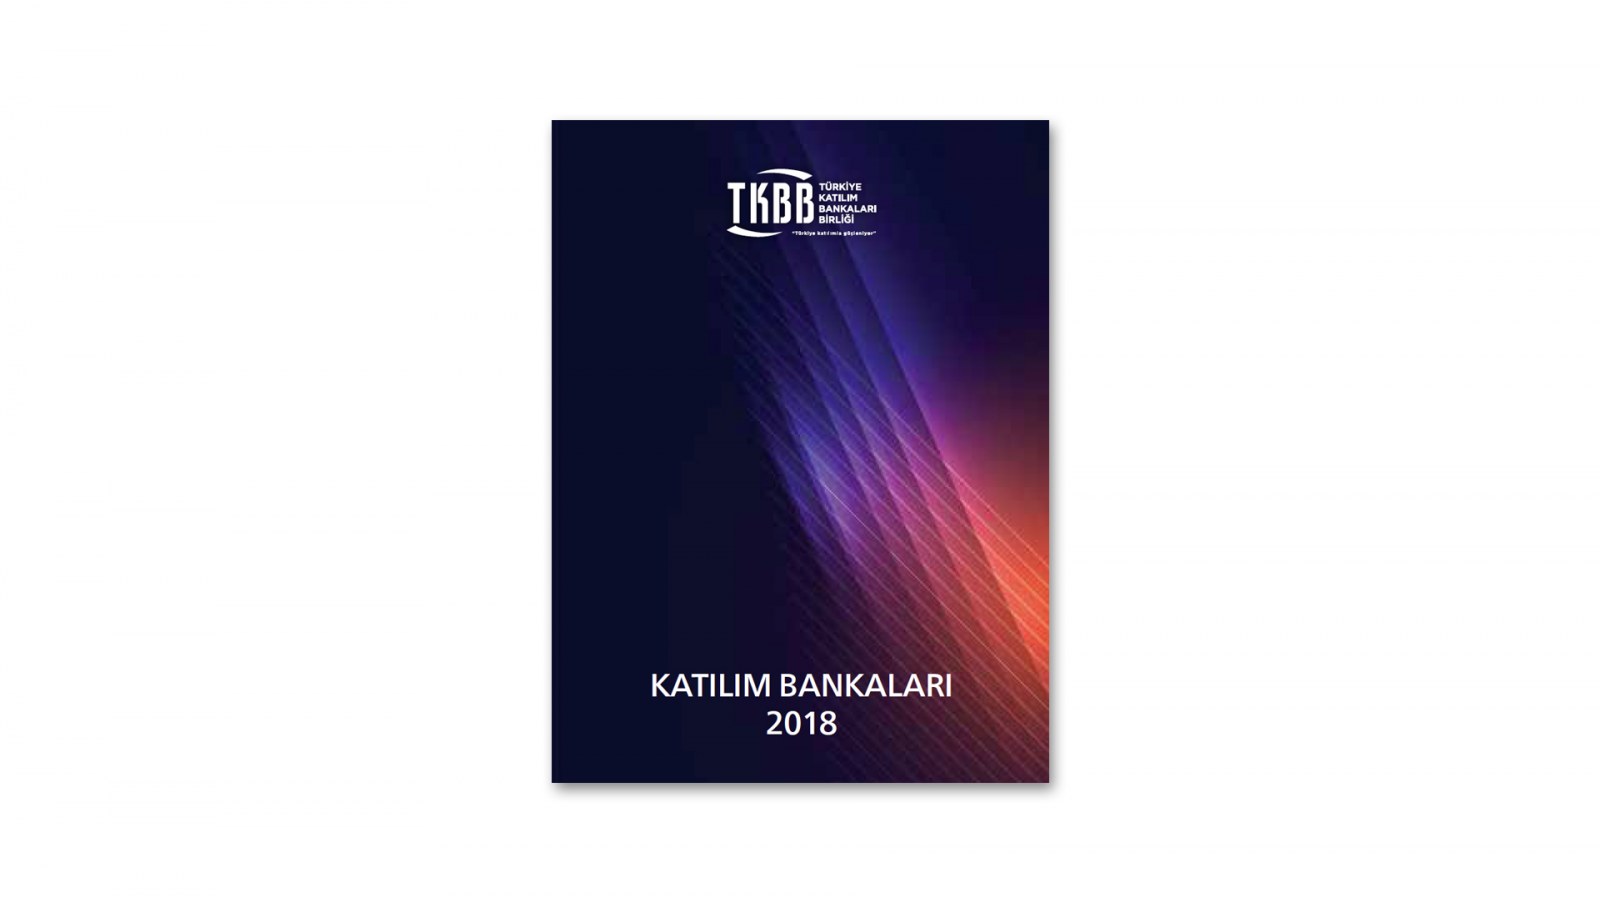 TÜRKİYE KATILIM BANKALARI BİRLİĞİ / 2018 Faaliyet Raporu / 2018 Annual Report